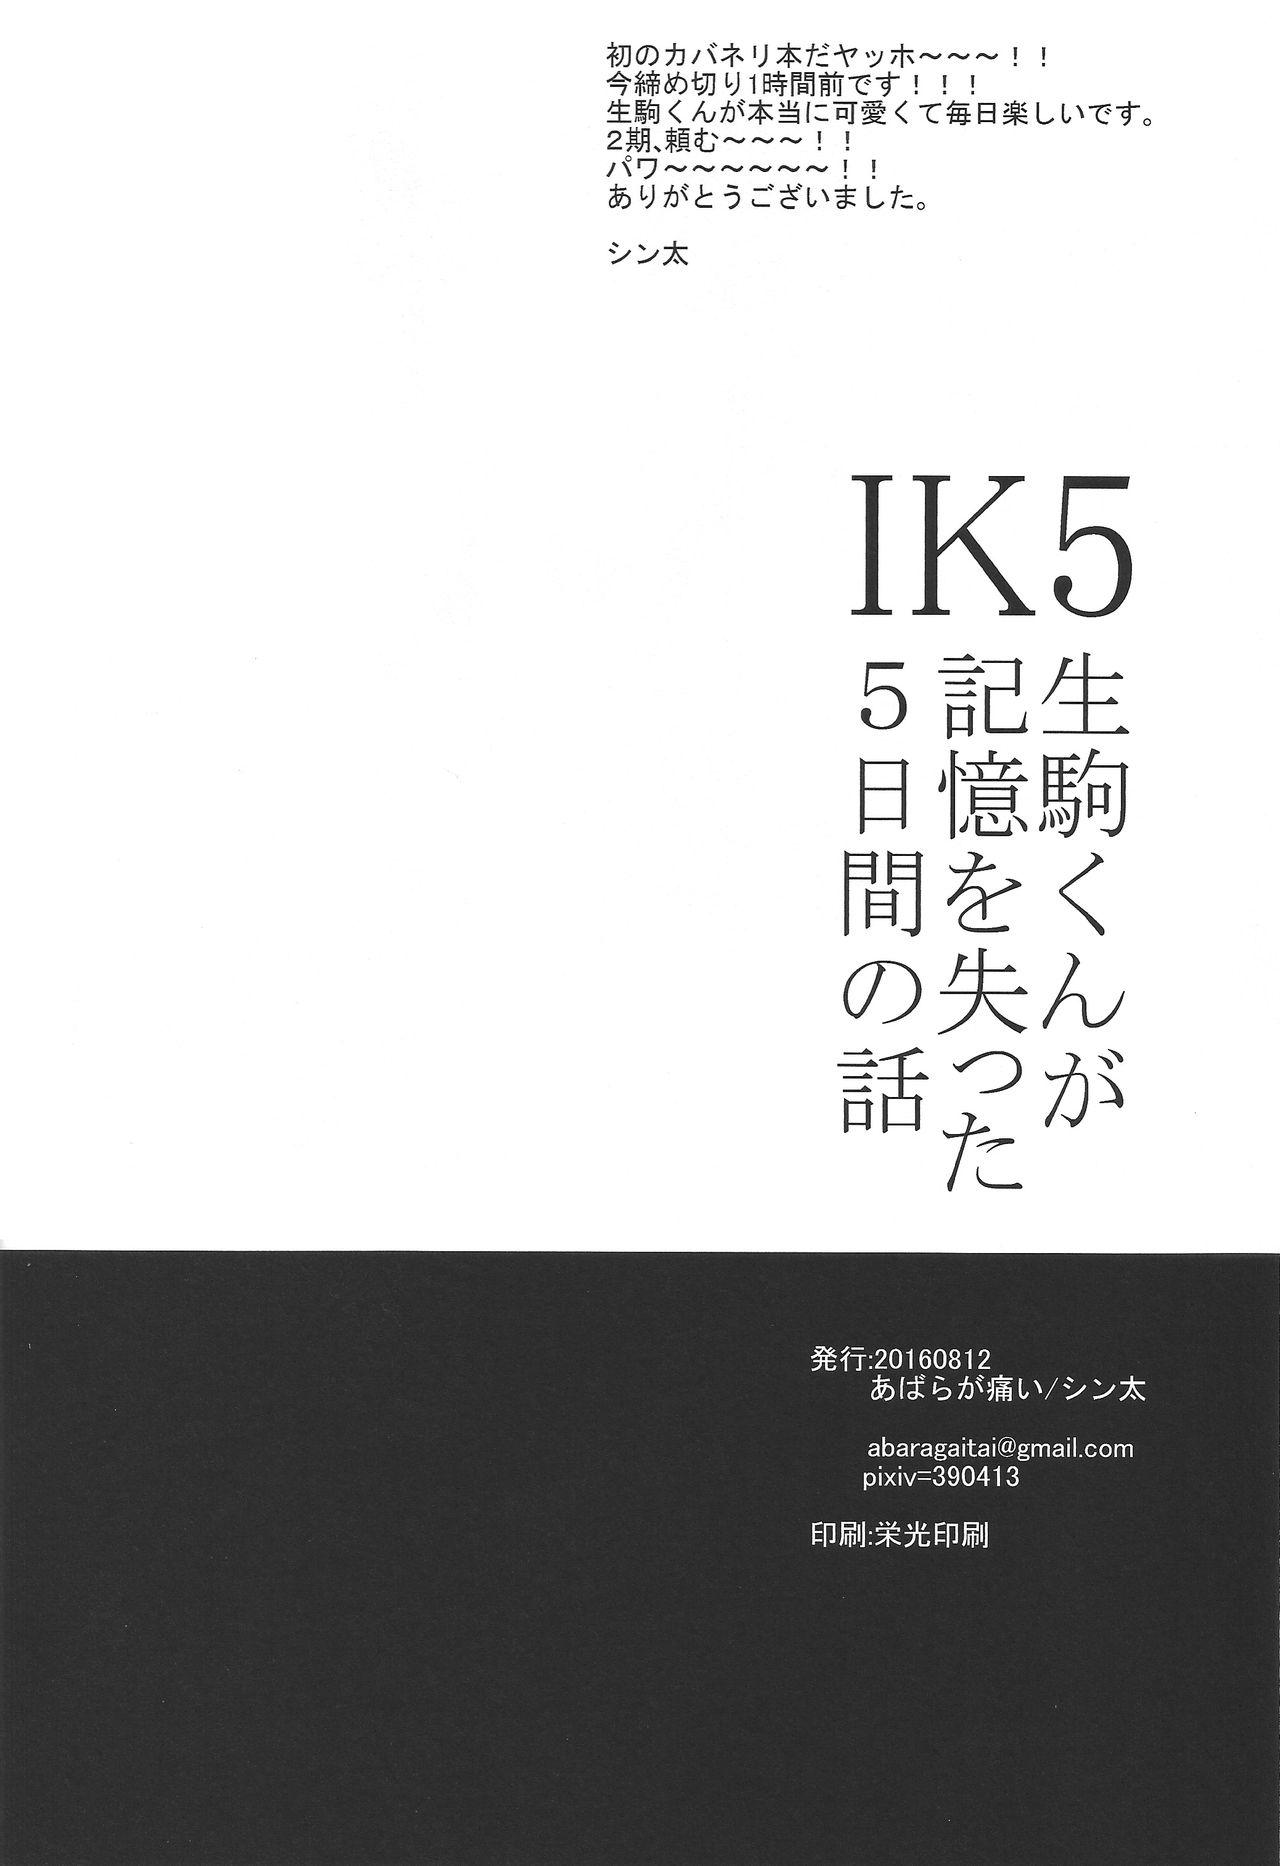 IK5 53